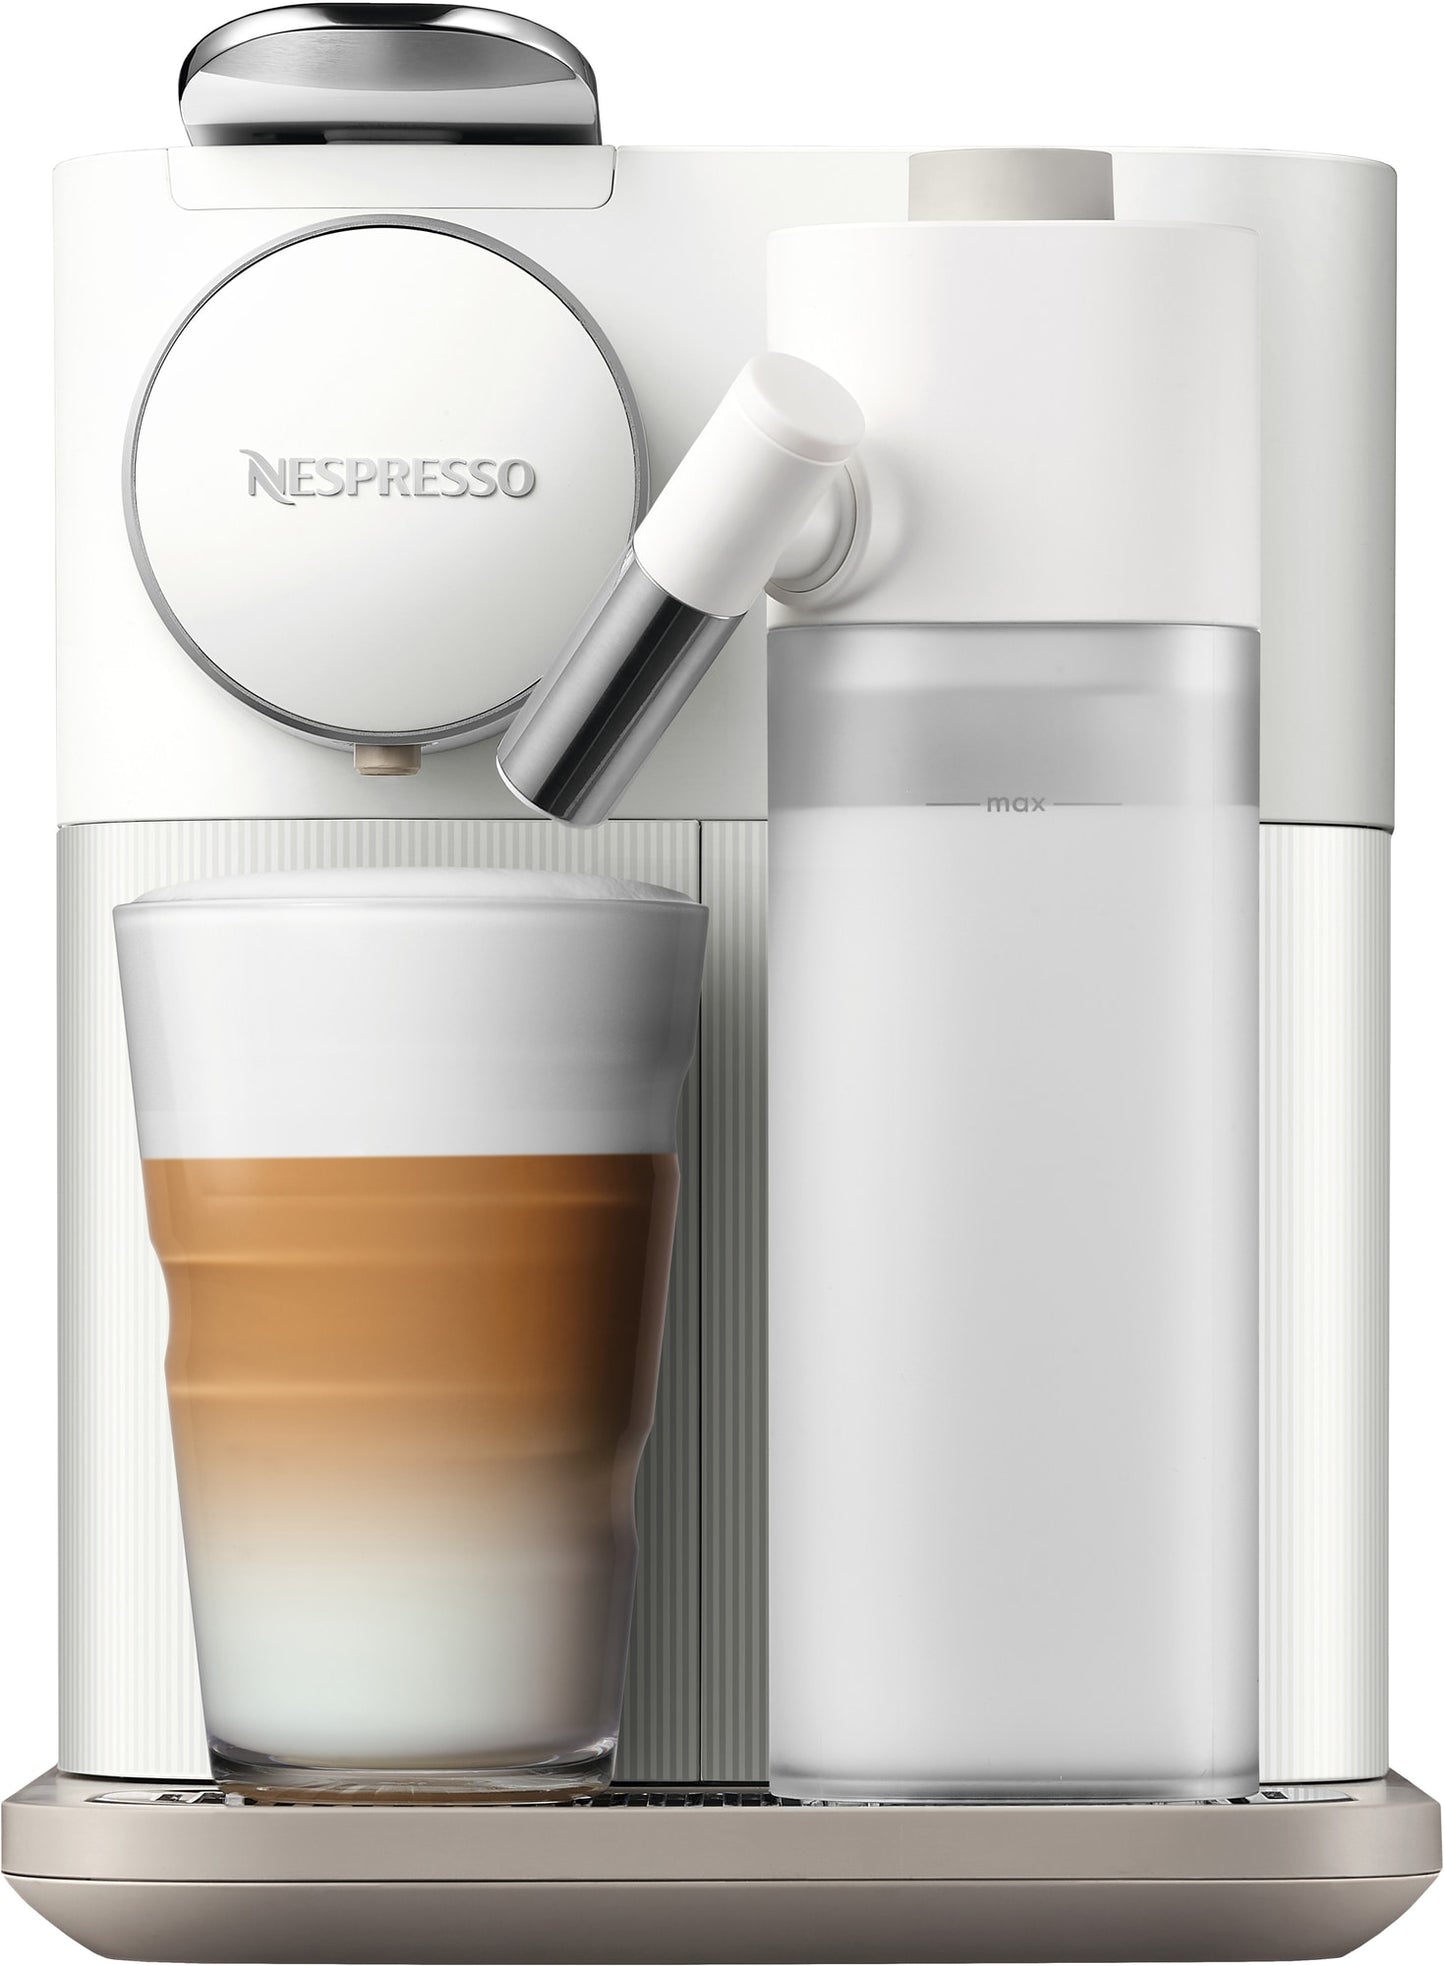 NESPRESSO Lattissima capsule coffee machine, white